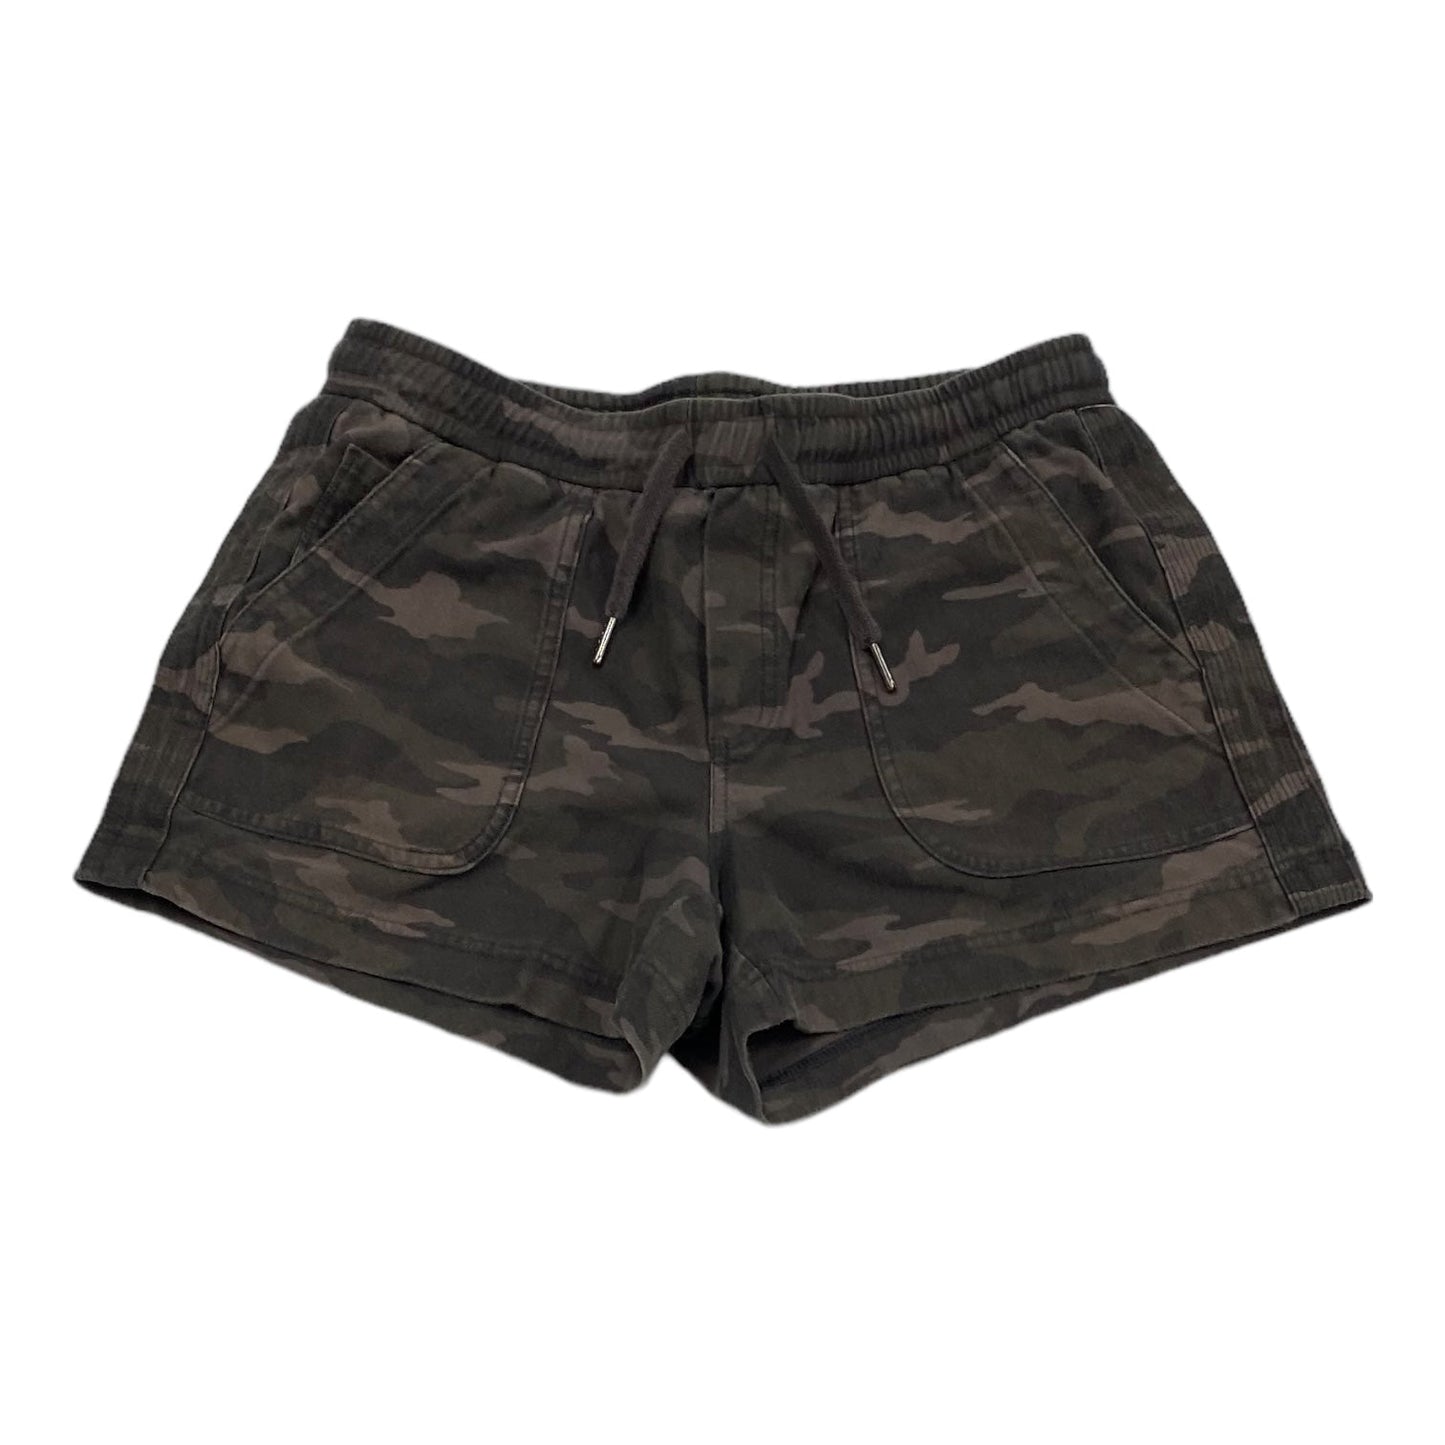 Camouflage Print Shorts Athleta, Size 6